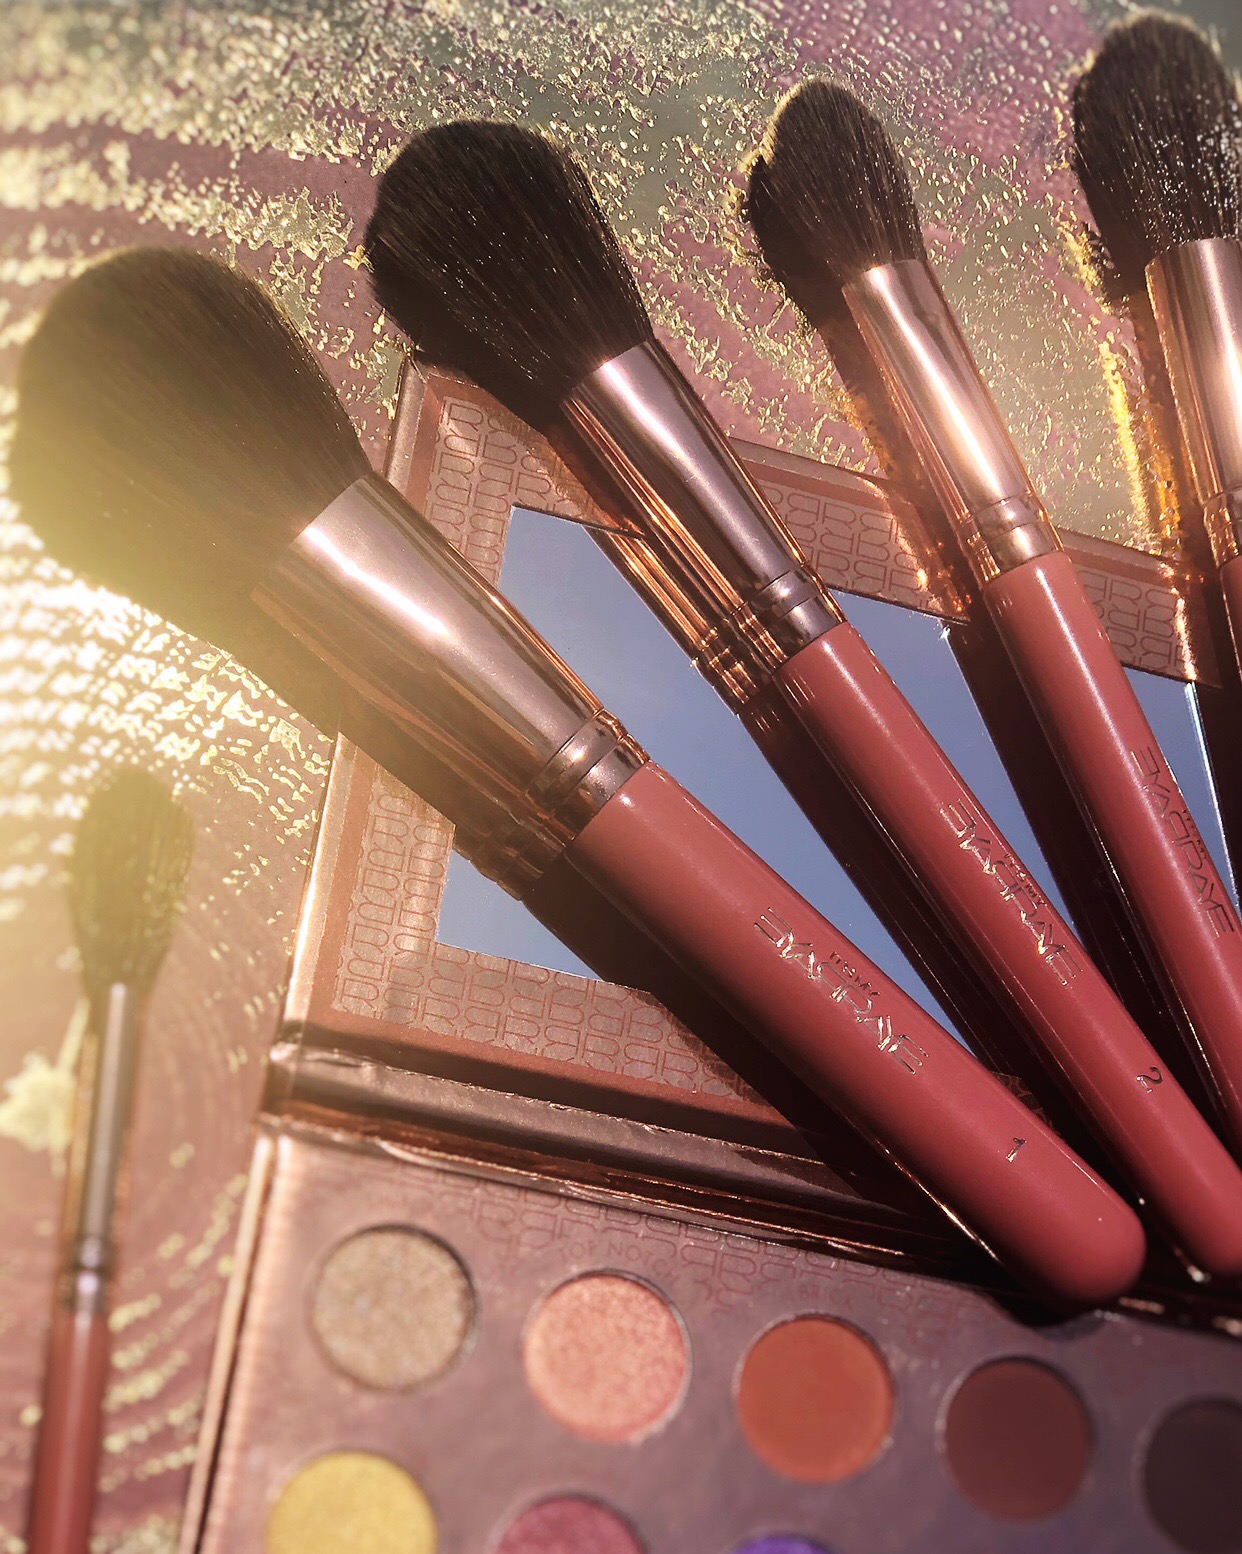 BH Cosmetics x ItsMyRayeRaye Shadow Palette & Brush Set-Beauty 